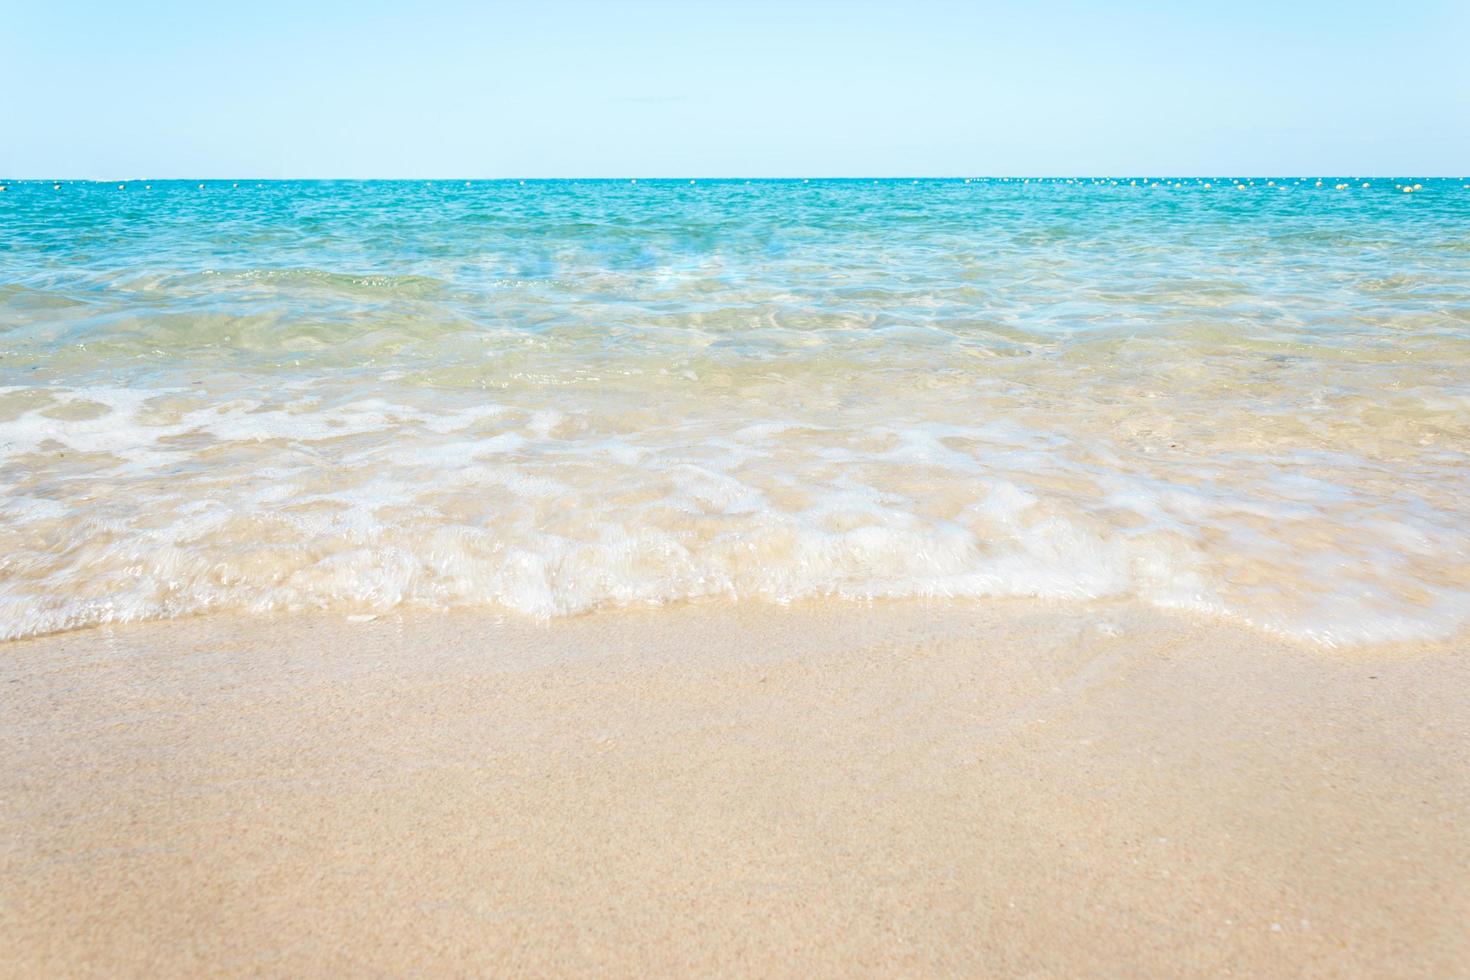 onde dell'oceano sulla spiaggia sabbiosa con cielo blu chiaro foto